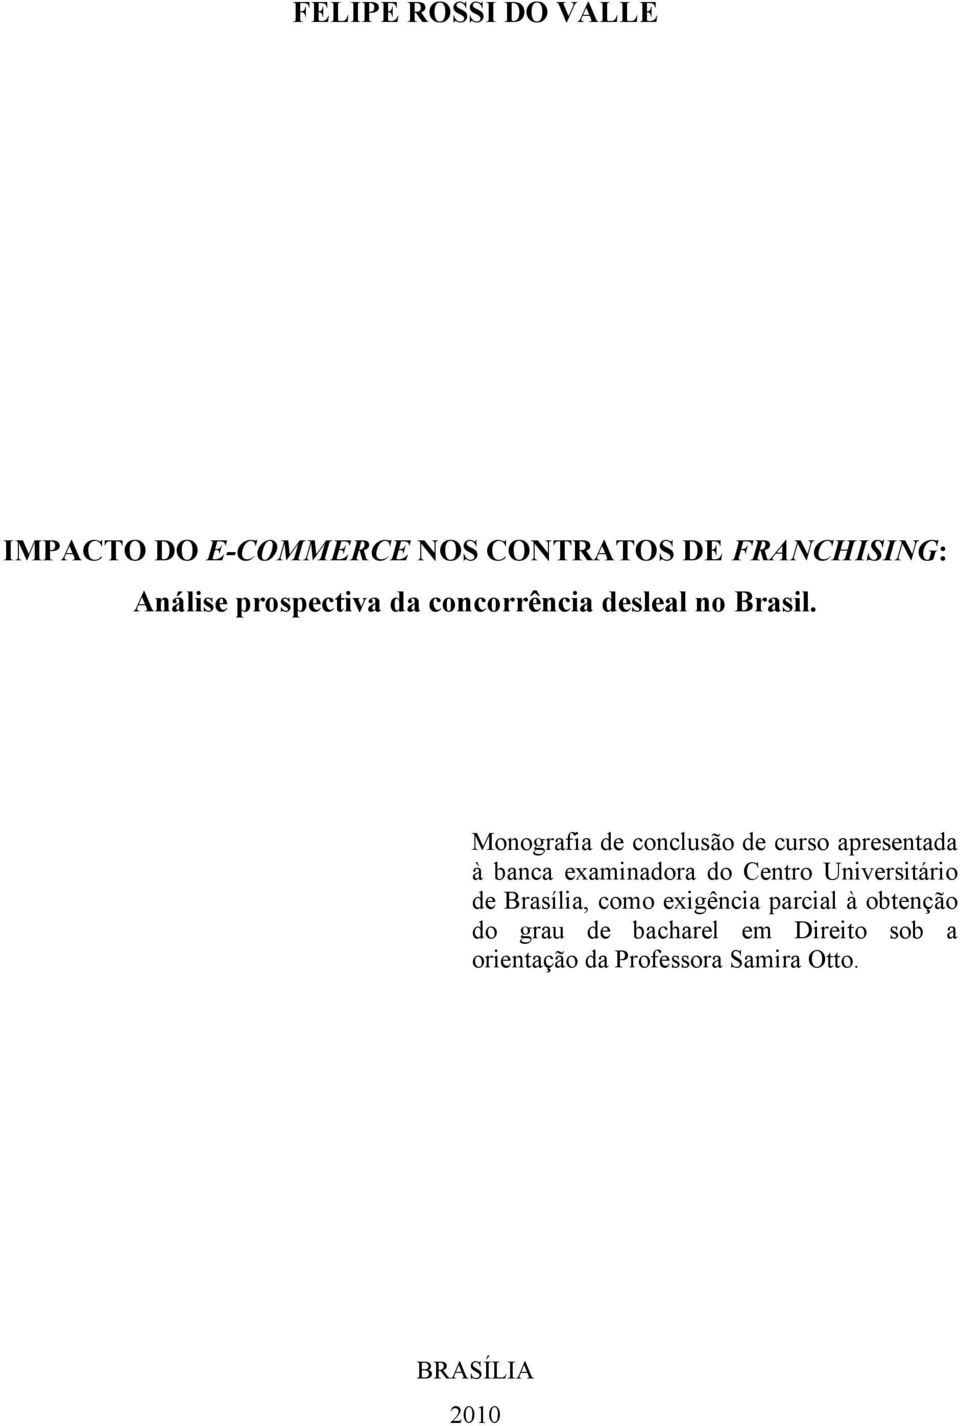 Monografia de conclusão de curso apresentada à banca examinadora do Centro Universitário